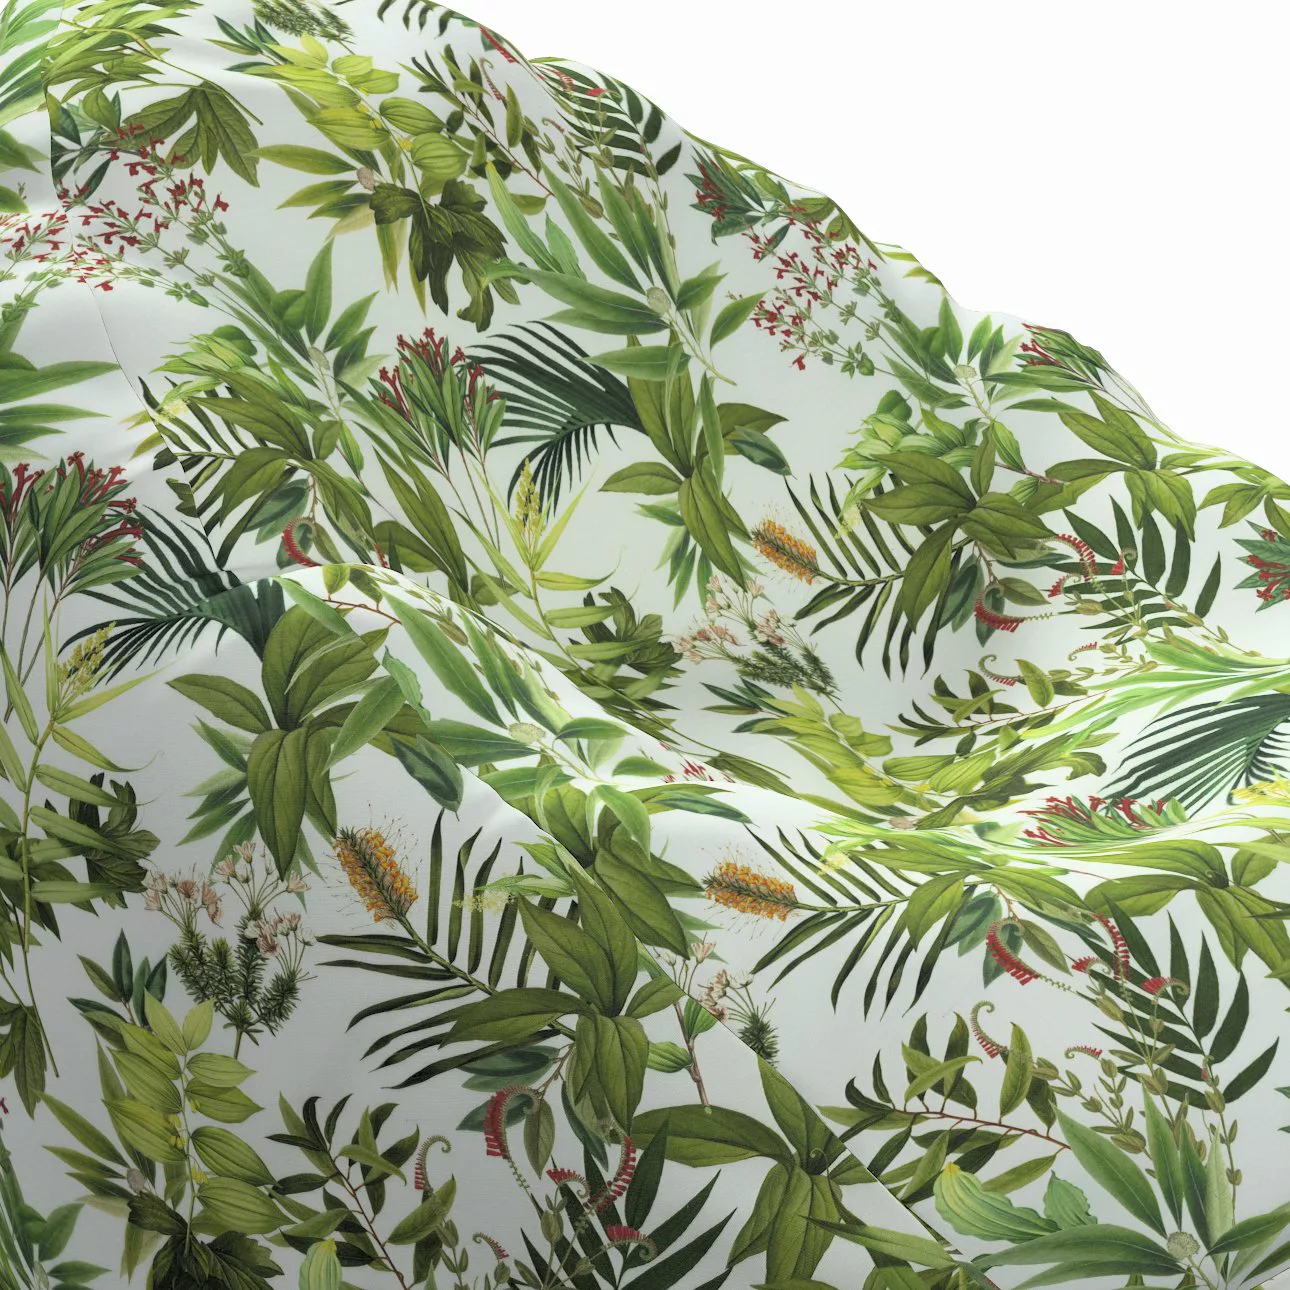 Bezug für Sitzsack, grün-weiß, Bezug für Sitzsack Ø60 x 105 cm, Tropical Is günstig online kaufen